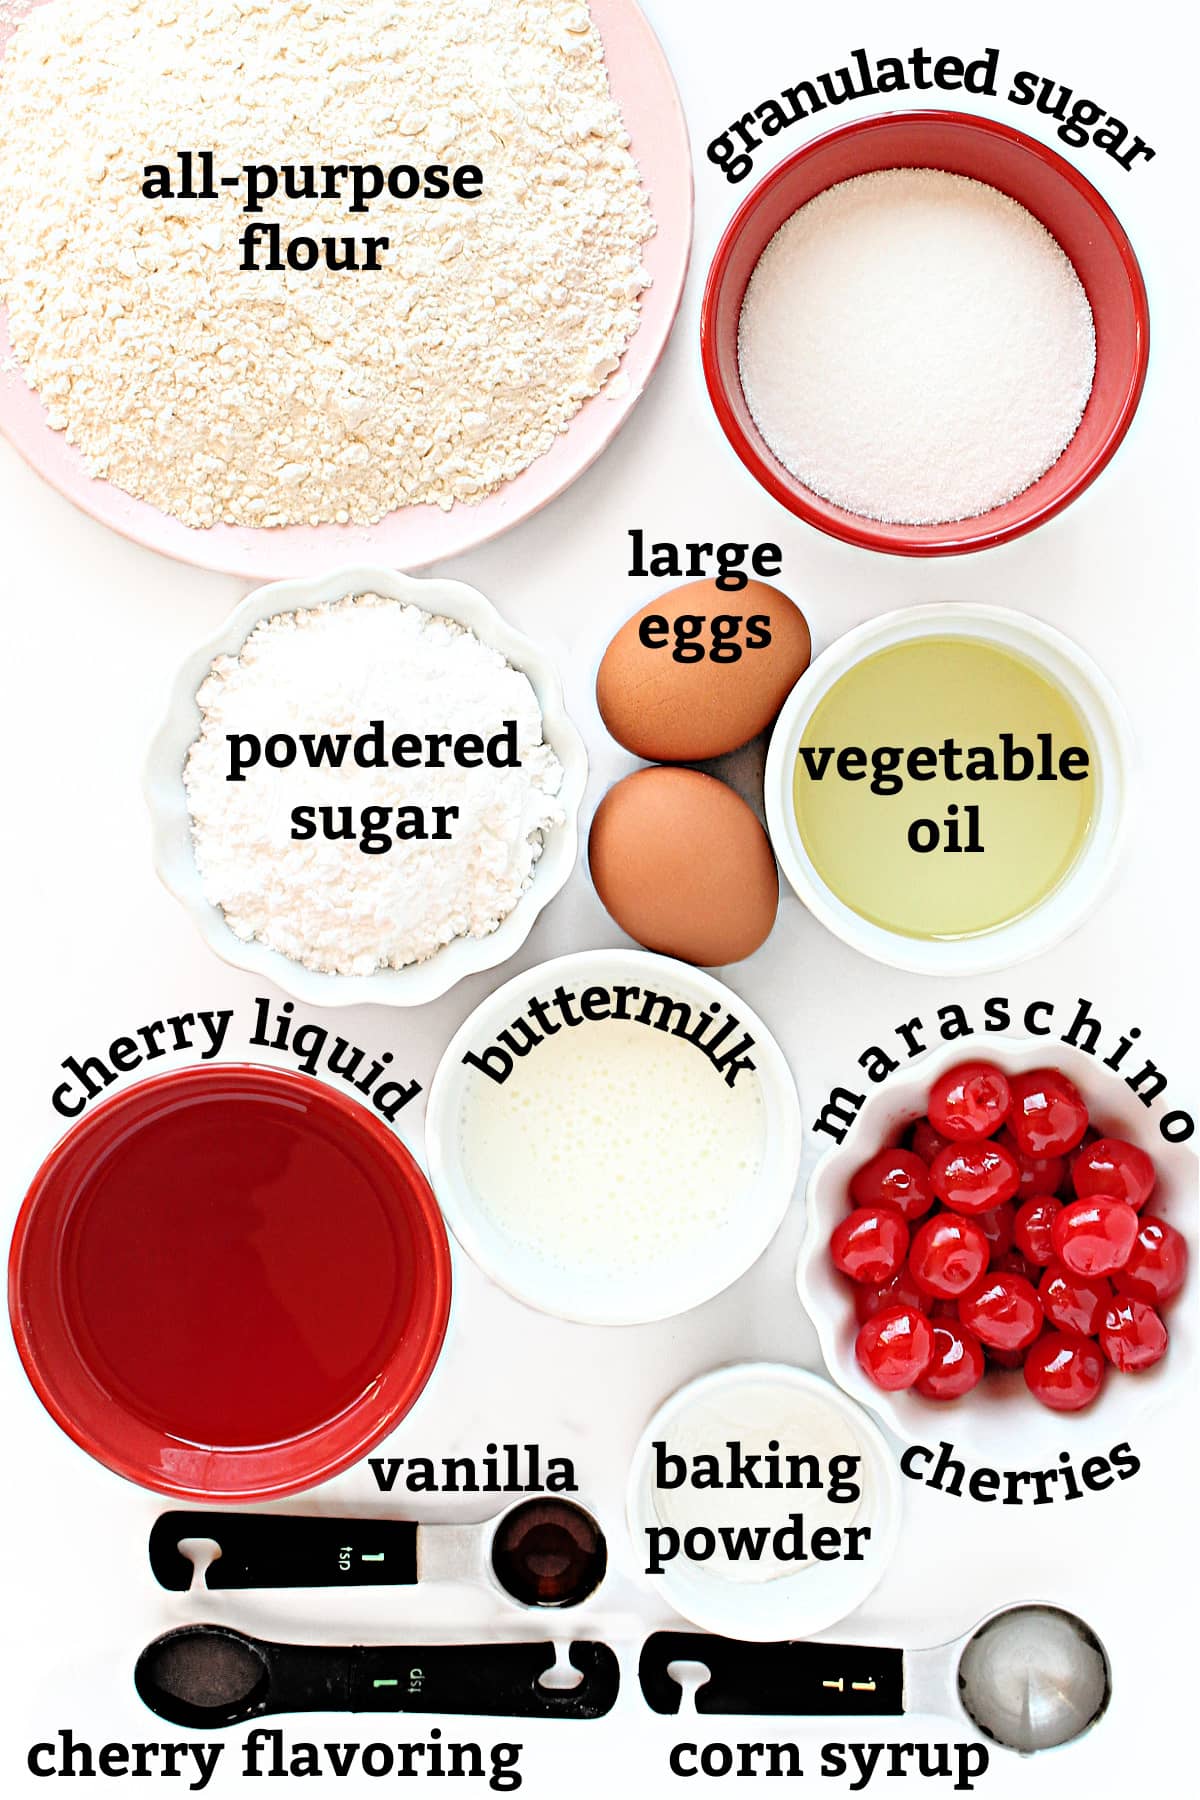 Ingredients labeled flour, sugar, eggs, oil, buttermilk, cherry liquid, cherries, vanilla, cherry flavoring, baking powder, corn syrup.